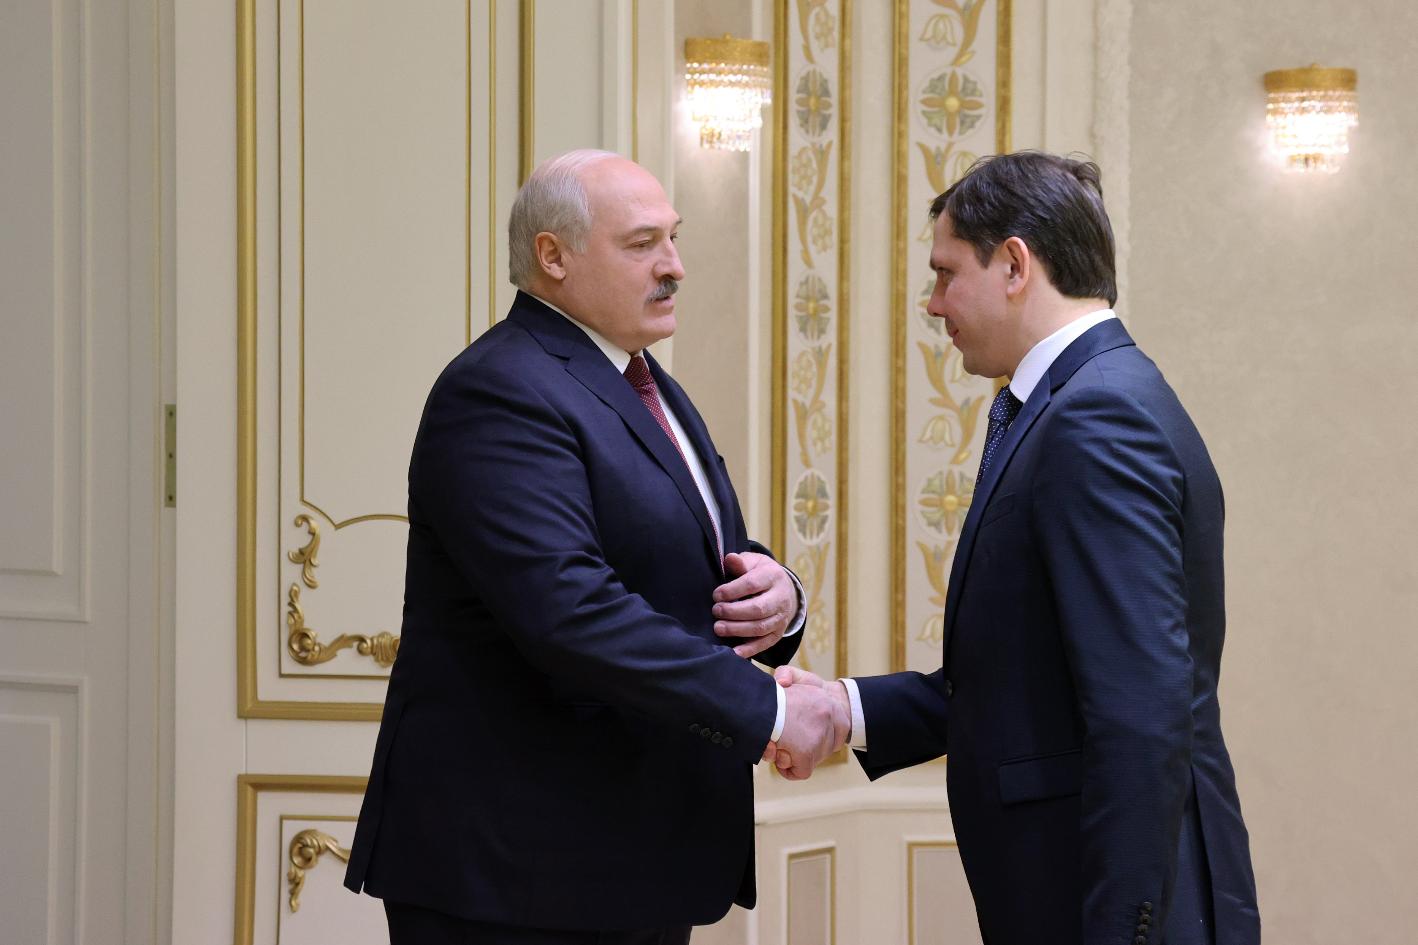 Лукашенко: если чем-то мы можем помочь, обращайтесь, мы будем рады помочь